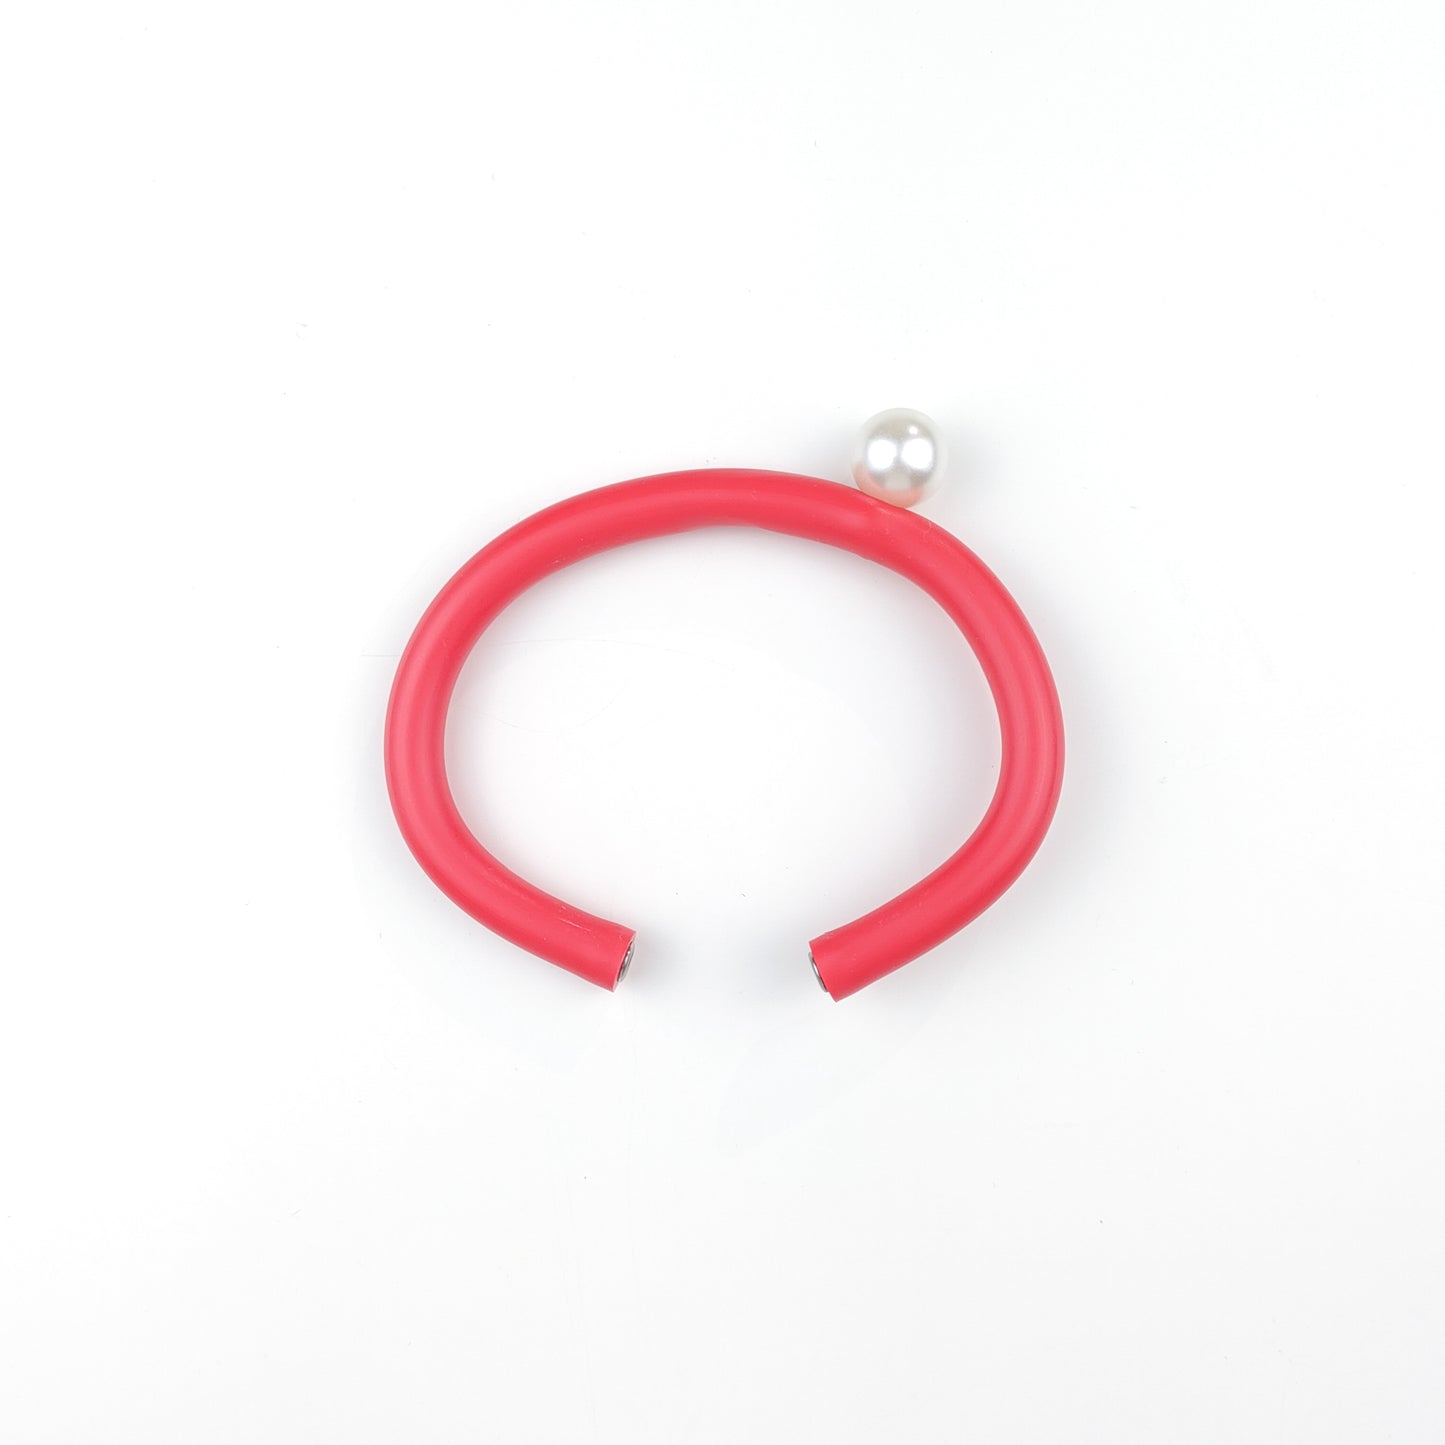 BILICO bracelet - orange red / gold pearl